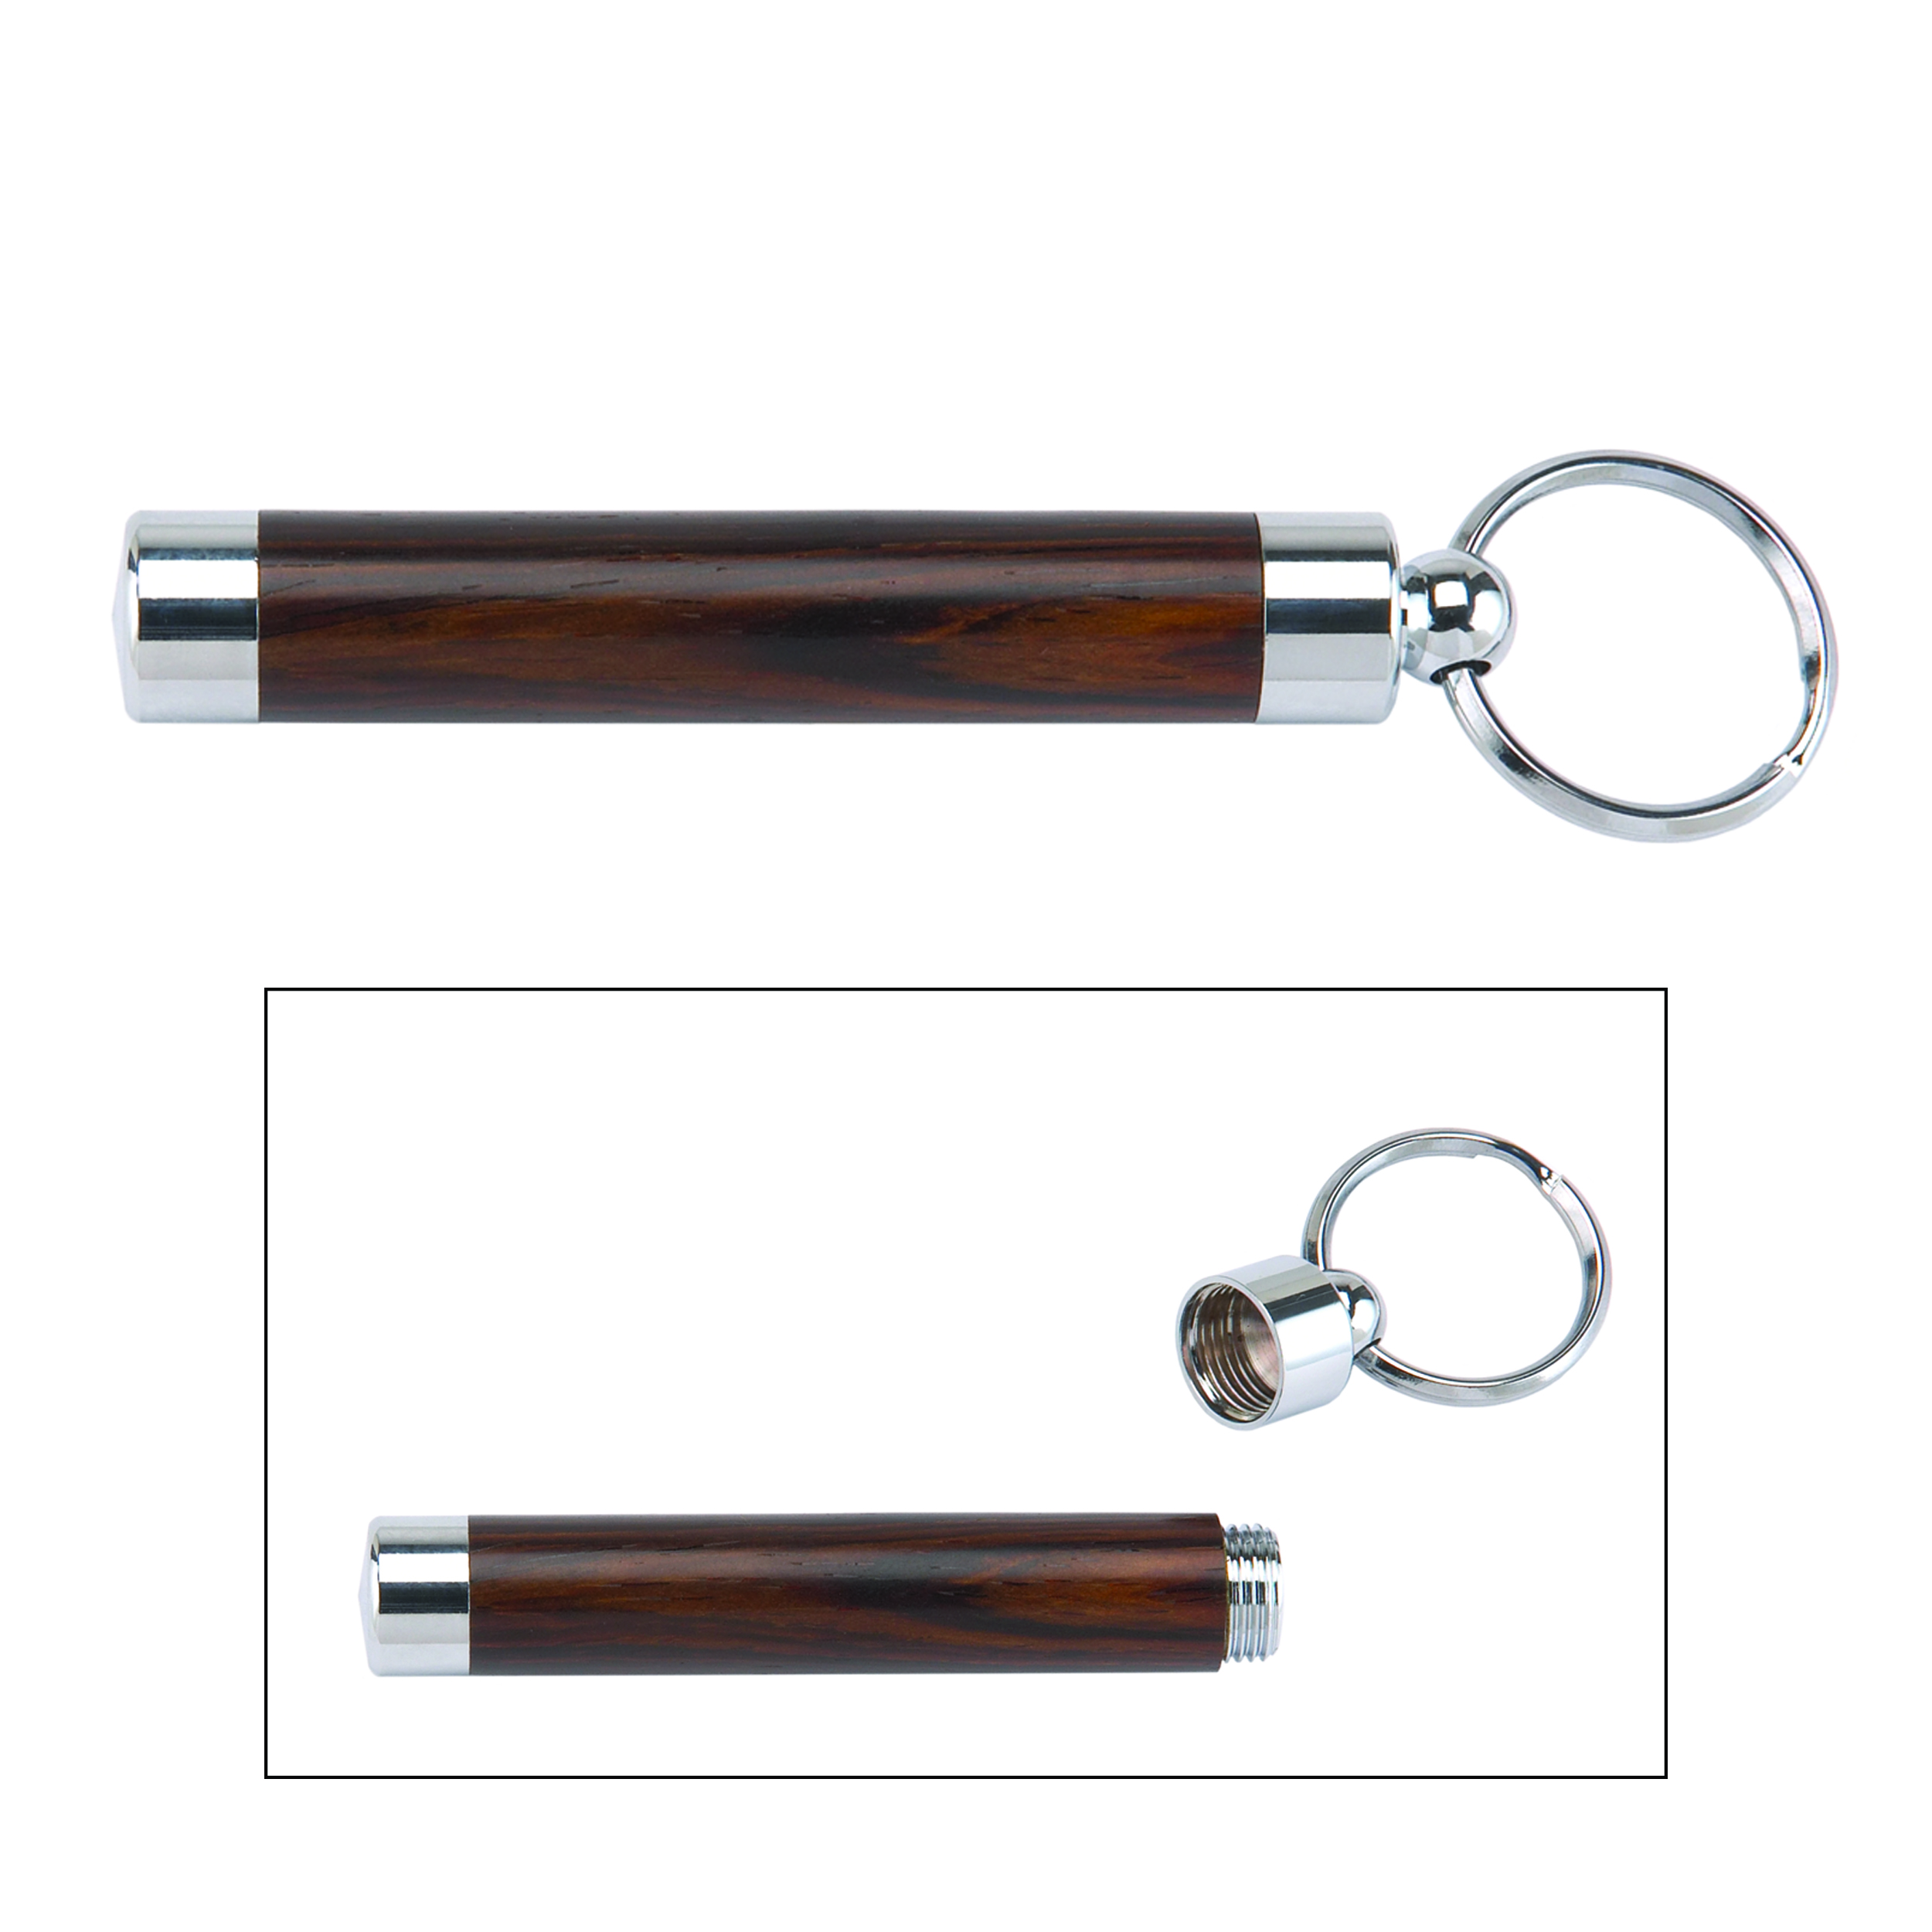 Toothpick Holder Key Ring Kit - Chrome